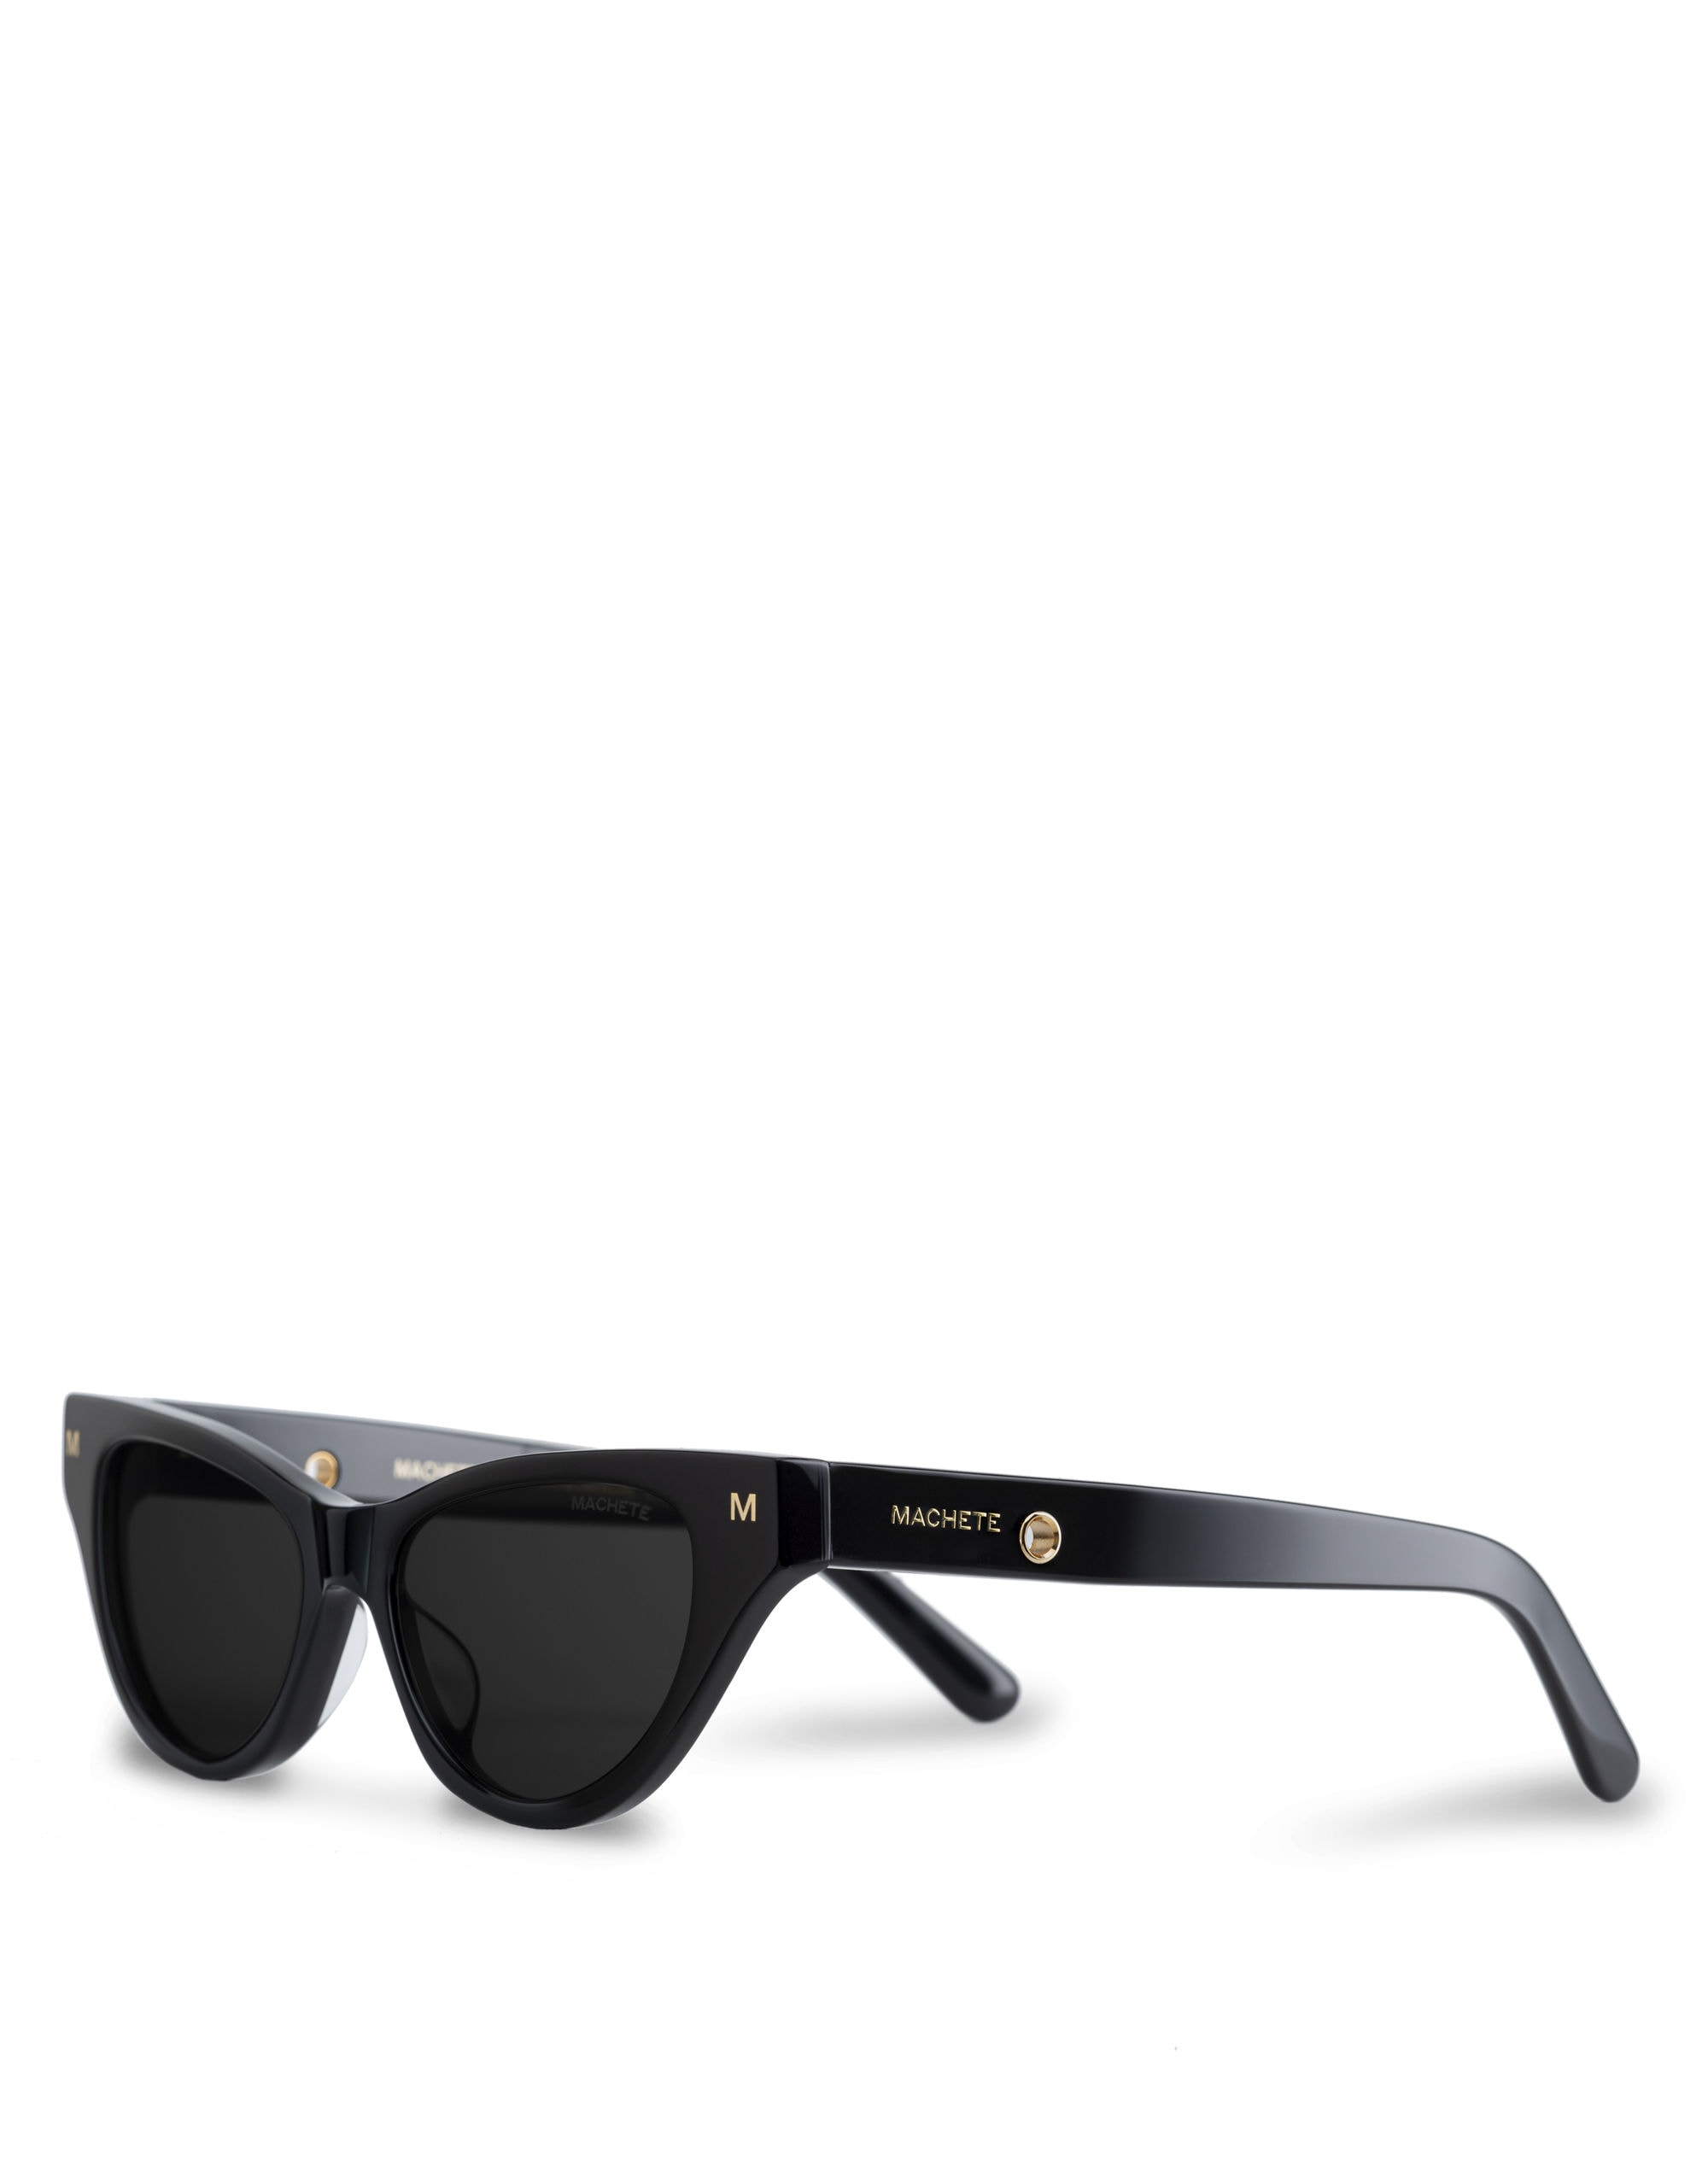 Mw Machete Suzy Sunglasses In Black